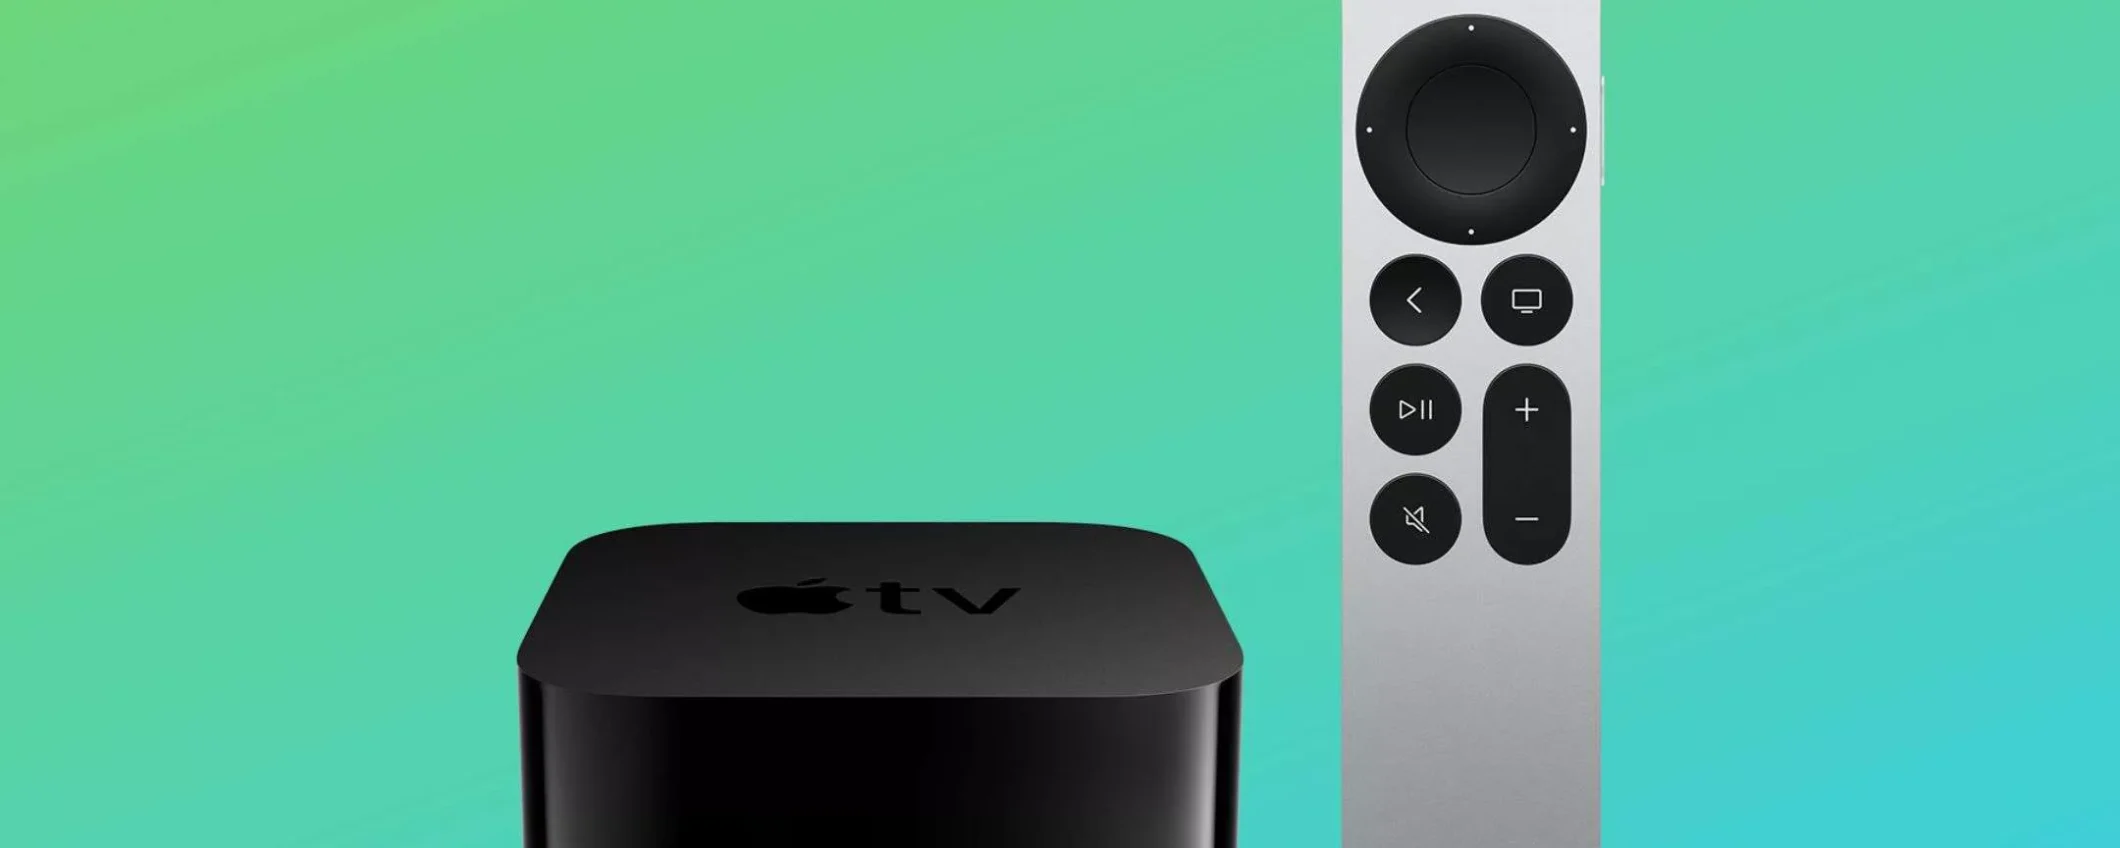 Apple TV 4K (64 GB): l'accessorio che non può mancare a casa tua